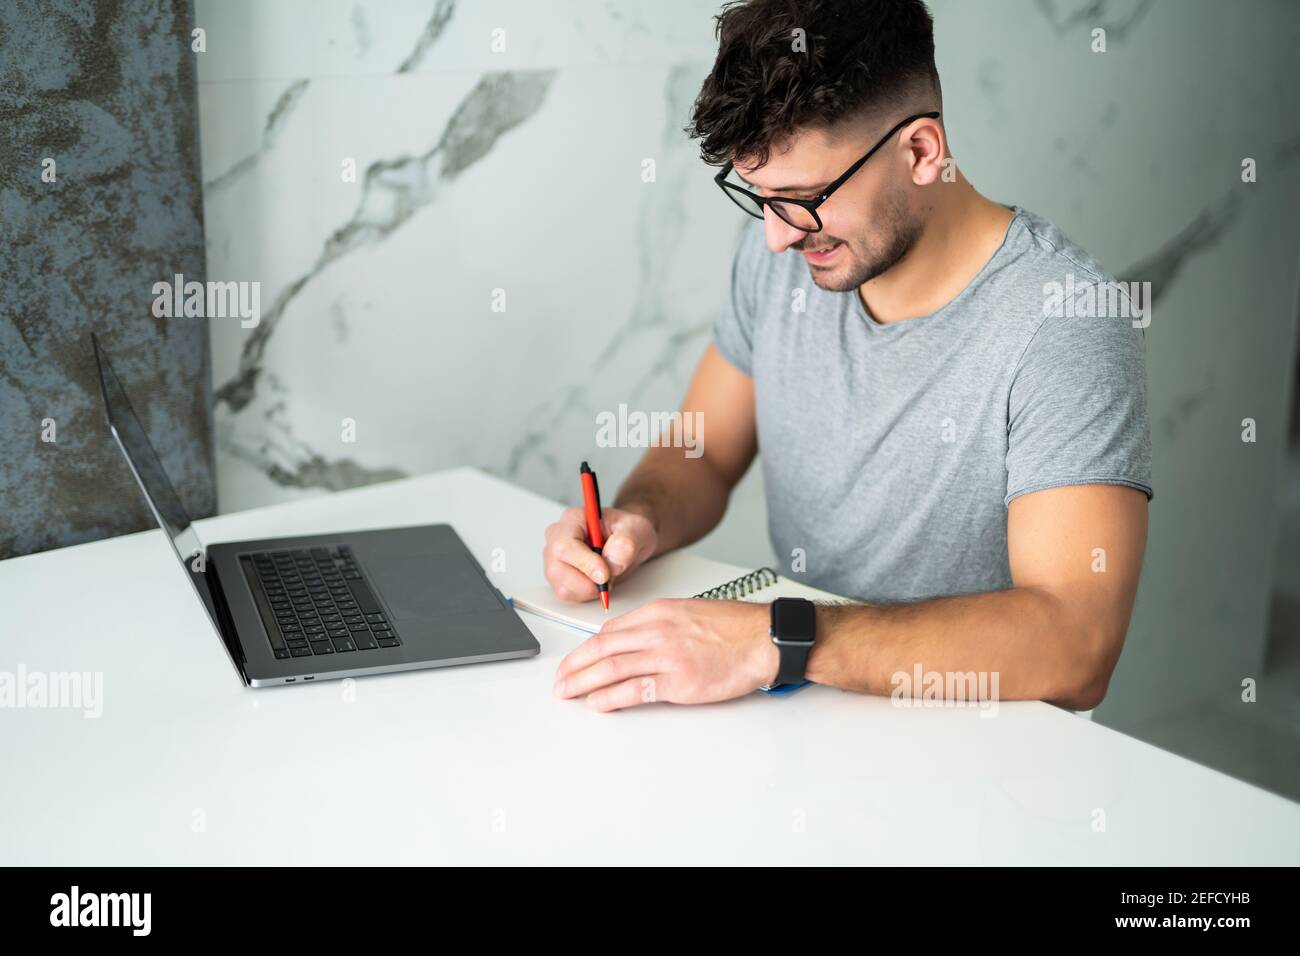 Uomo serio che indossa gli occhiali calcolando le fatture o le tasse domestiche, le spese della famiglia, usando il laptop e la calcolatrice nella cucina moderna Foto Stock